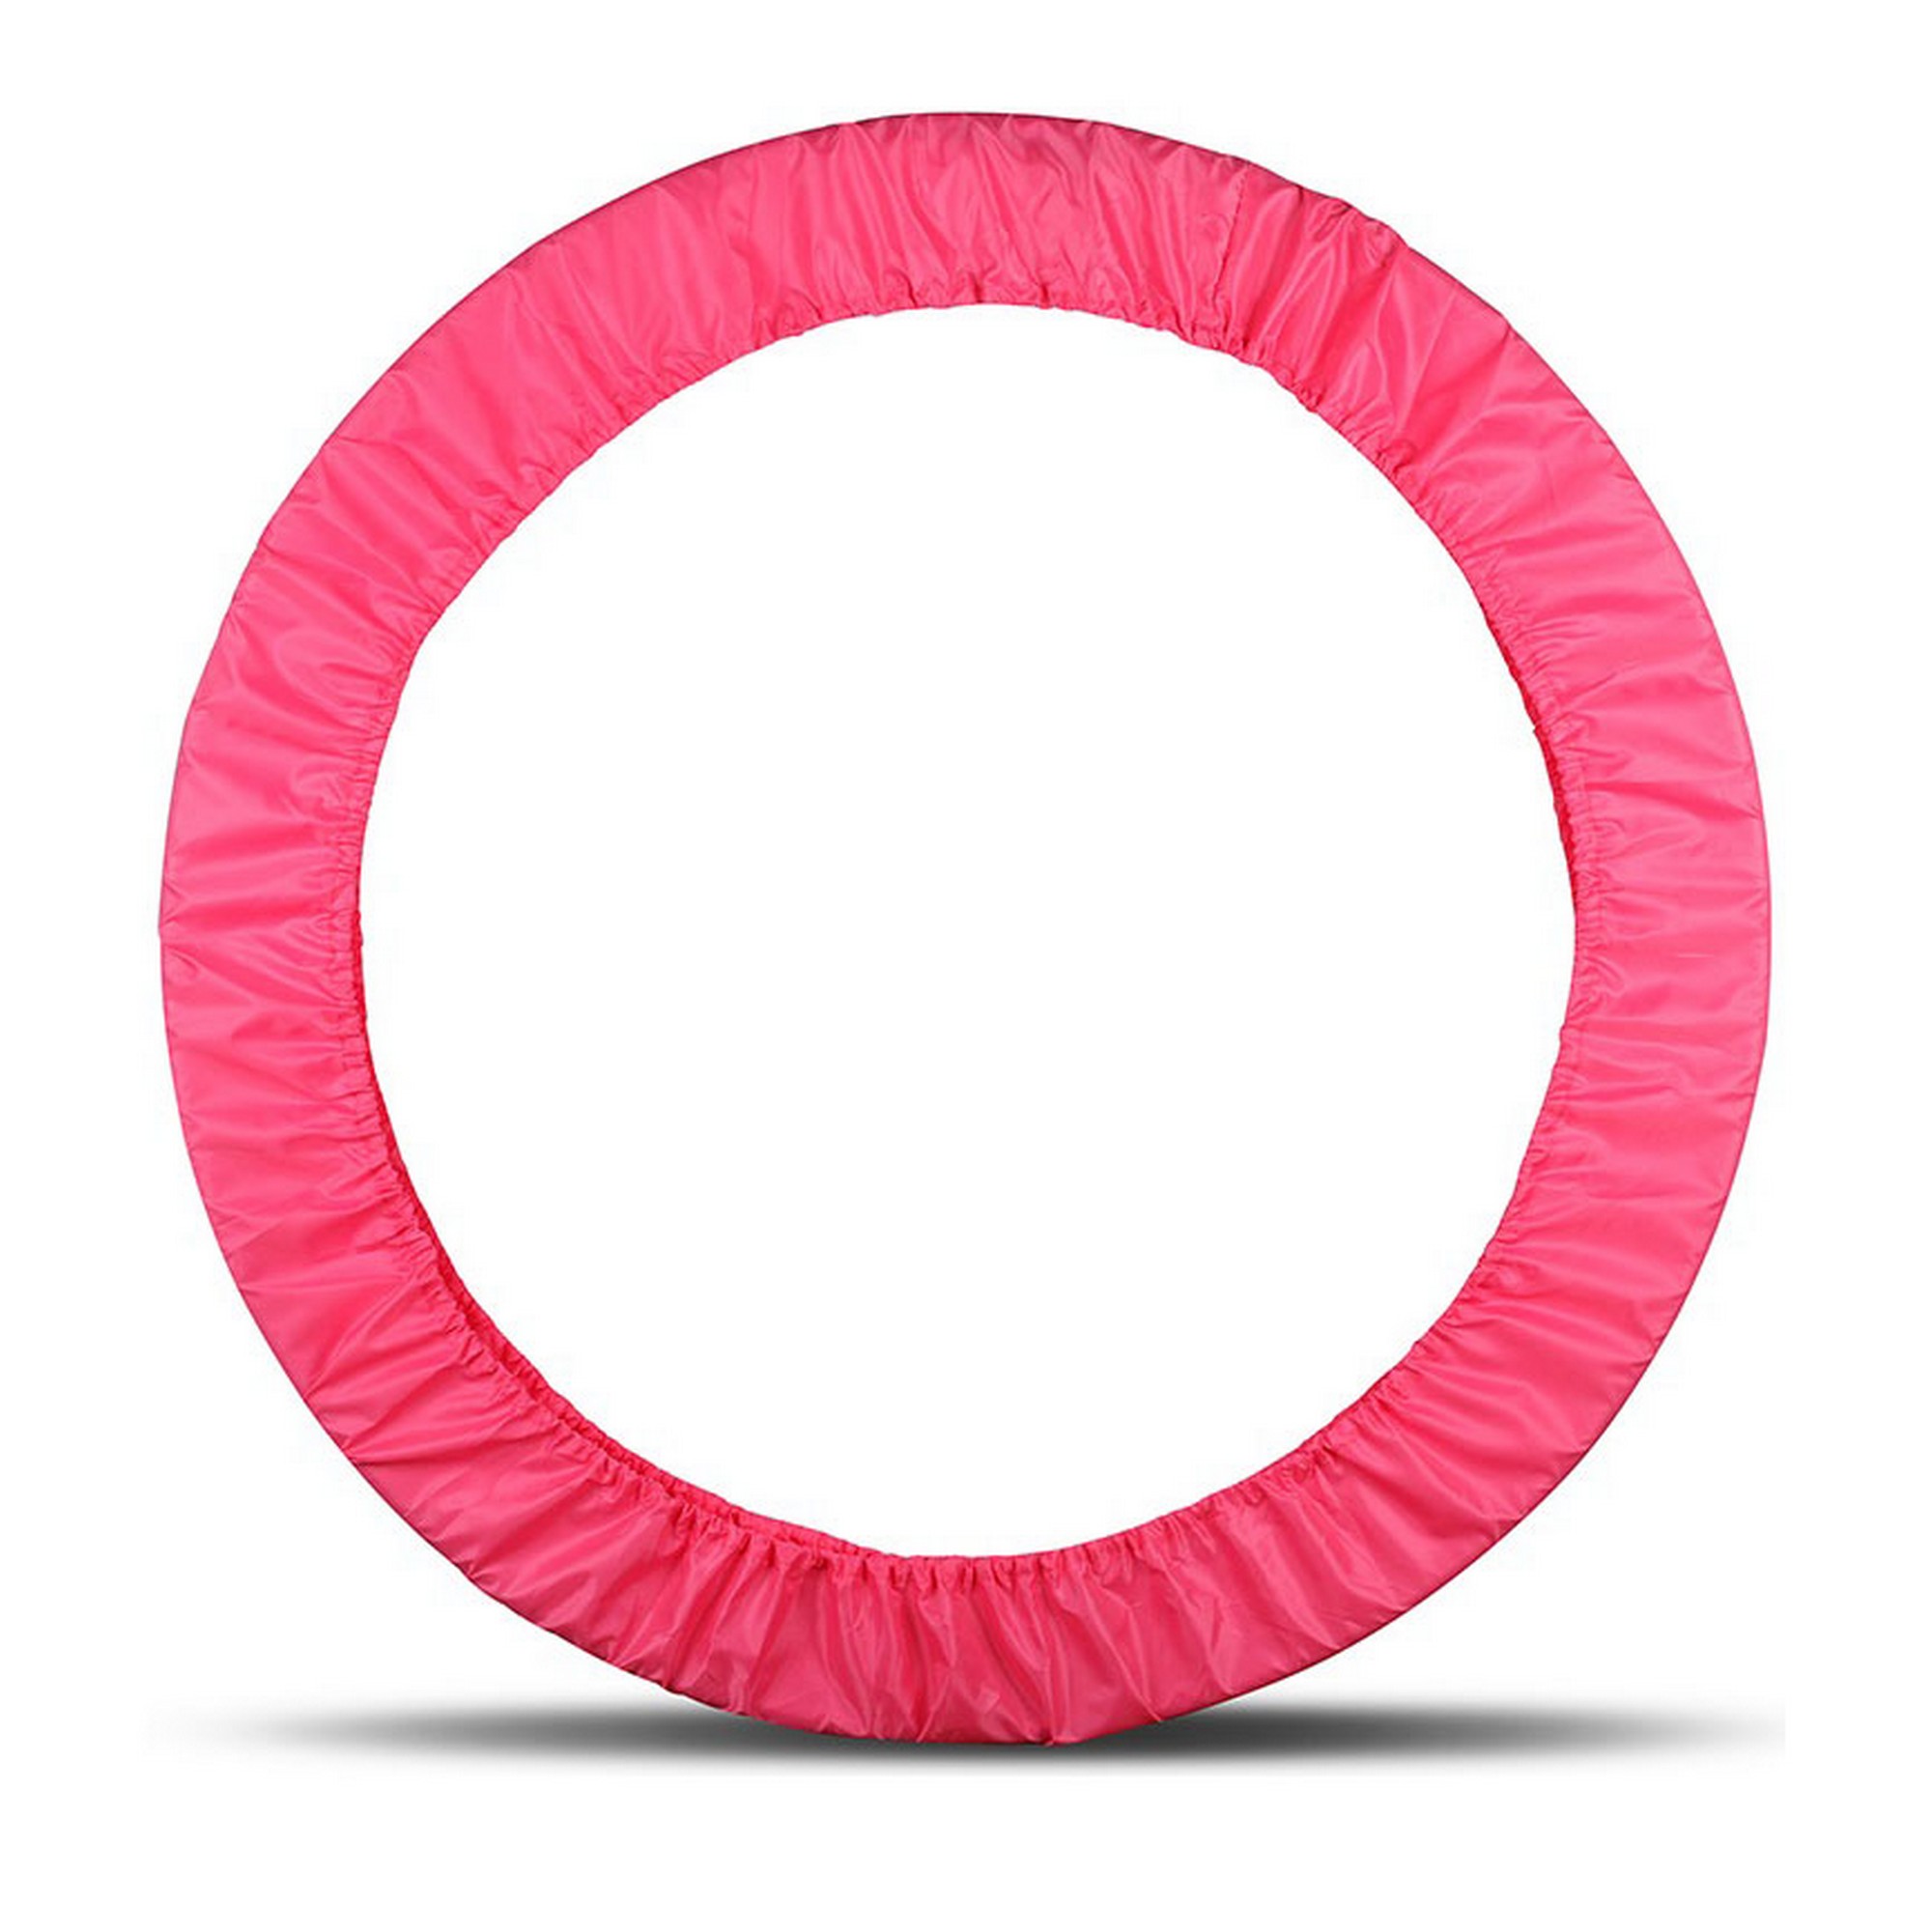 Чехол для обруча гимнастического Indigo полиэстер, 60-90см SM-084-P розовый 2000_2000